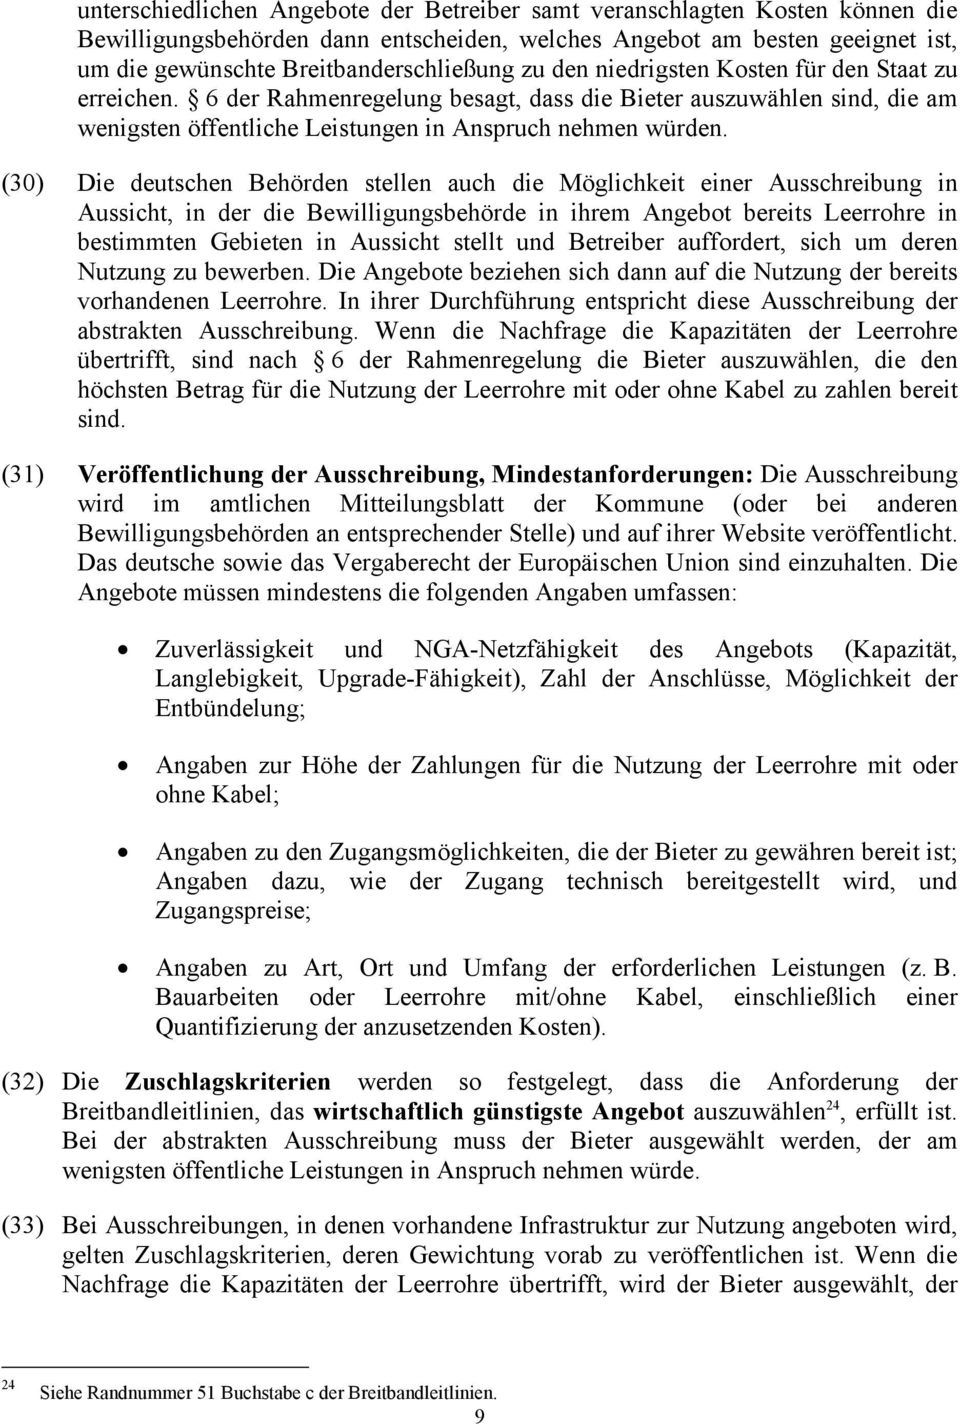 (30) Die deutschen Behörden stellen auch die Möglichkeit einer Ausschreibung in Aussicht, in der die Bewilligungsbehörde in ihrem Angebot bereits Leerrohre in bestimmten Gebieten in Aussicht stellt